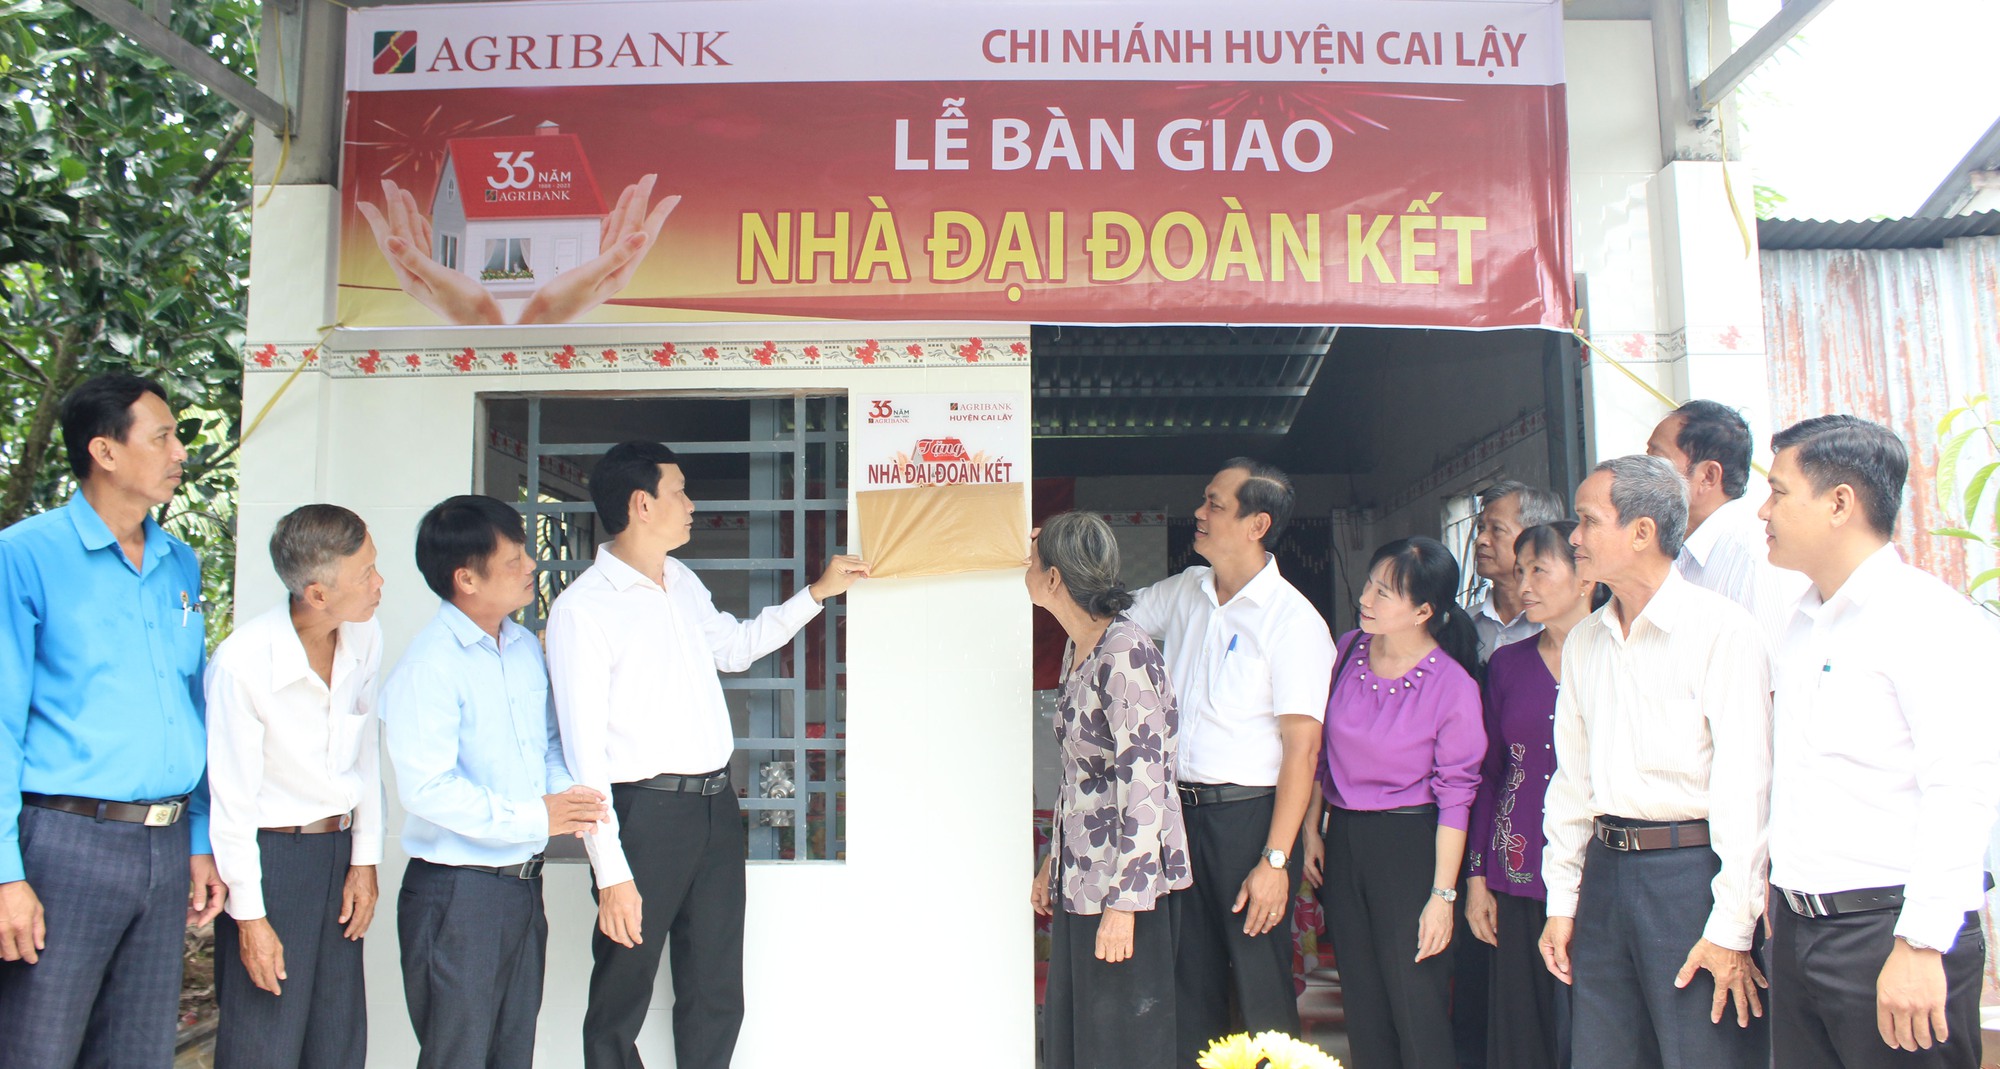 Agribank bàn giao 16 nhà Đại đoàn kết tại huyện Cai Lậy, tỉnh Tiền Giang - Ảnh 2.